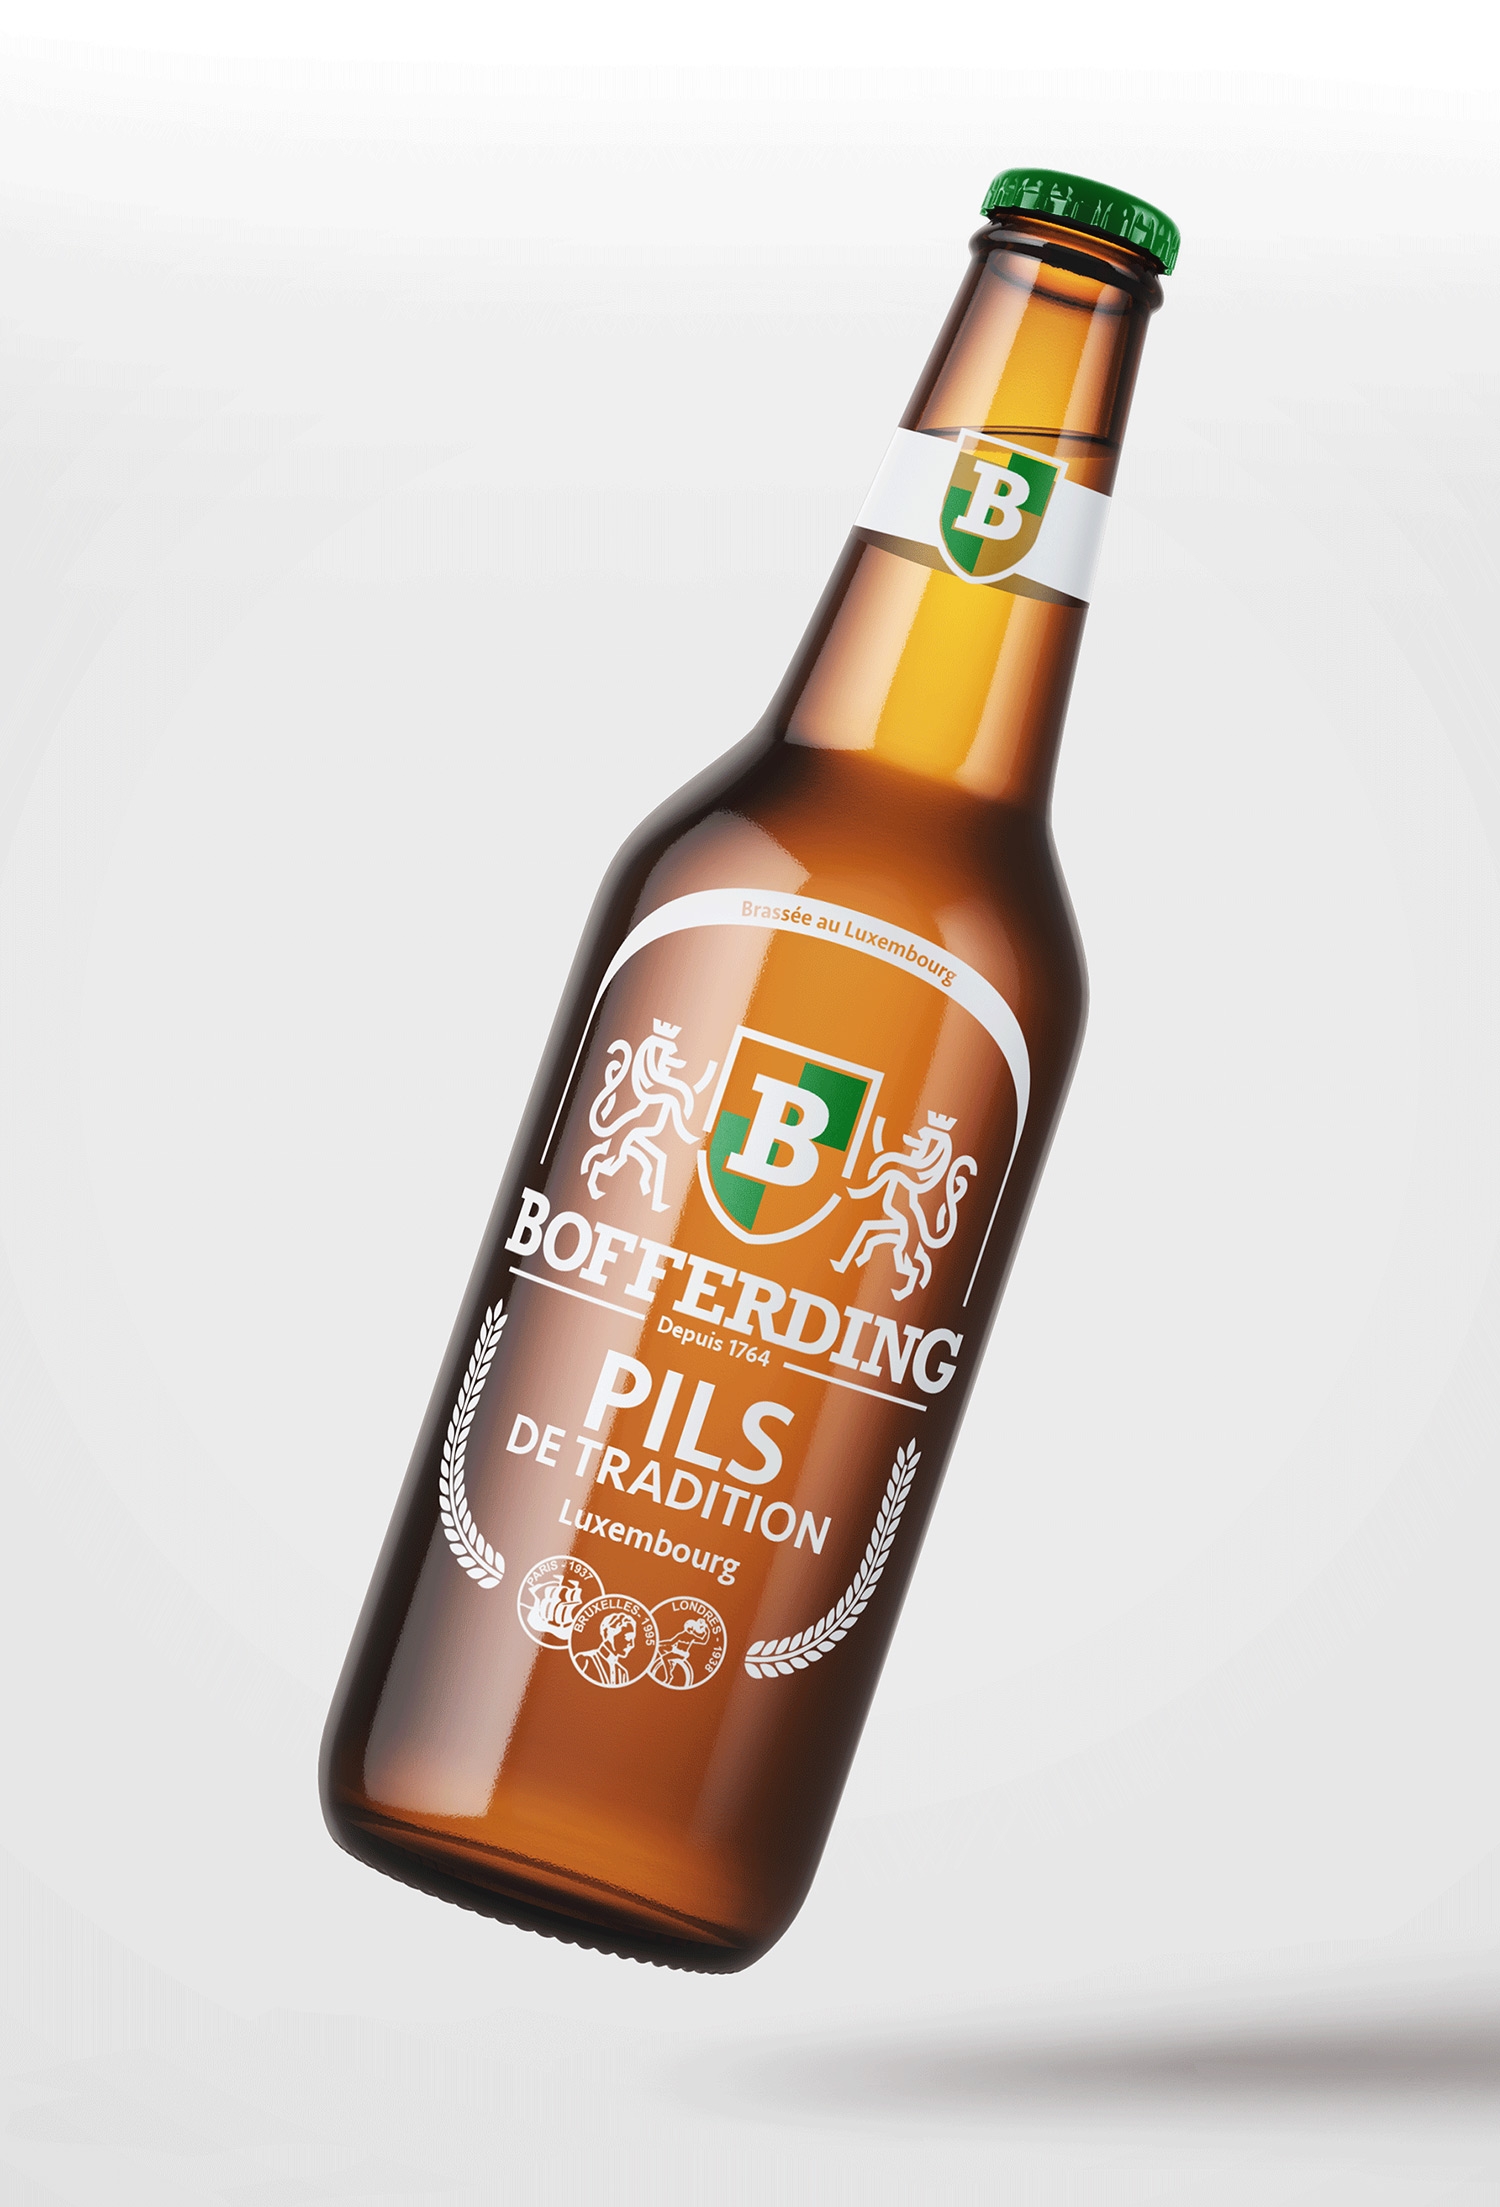 Bofferding beer bottle concept design